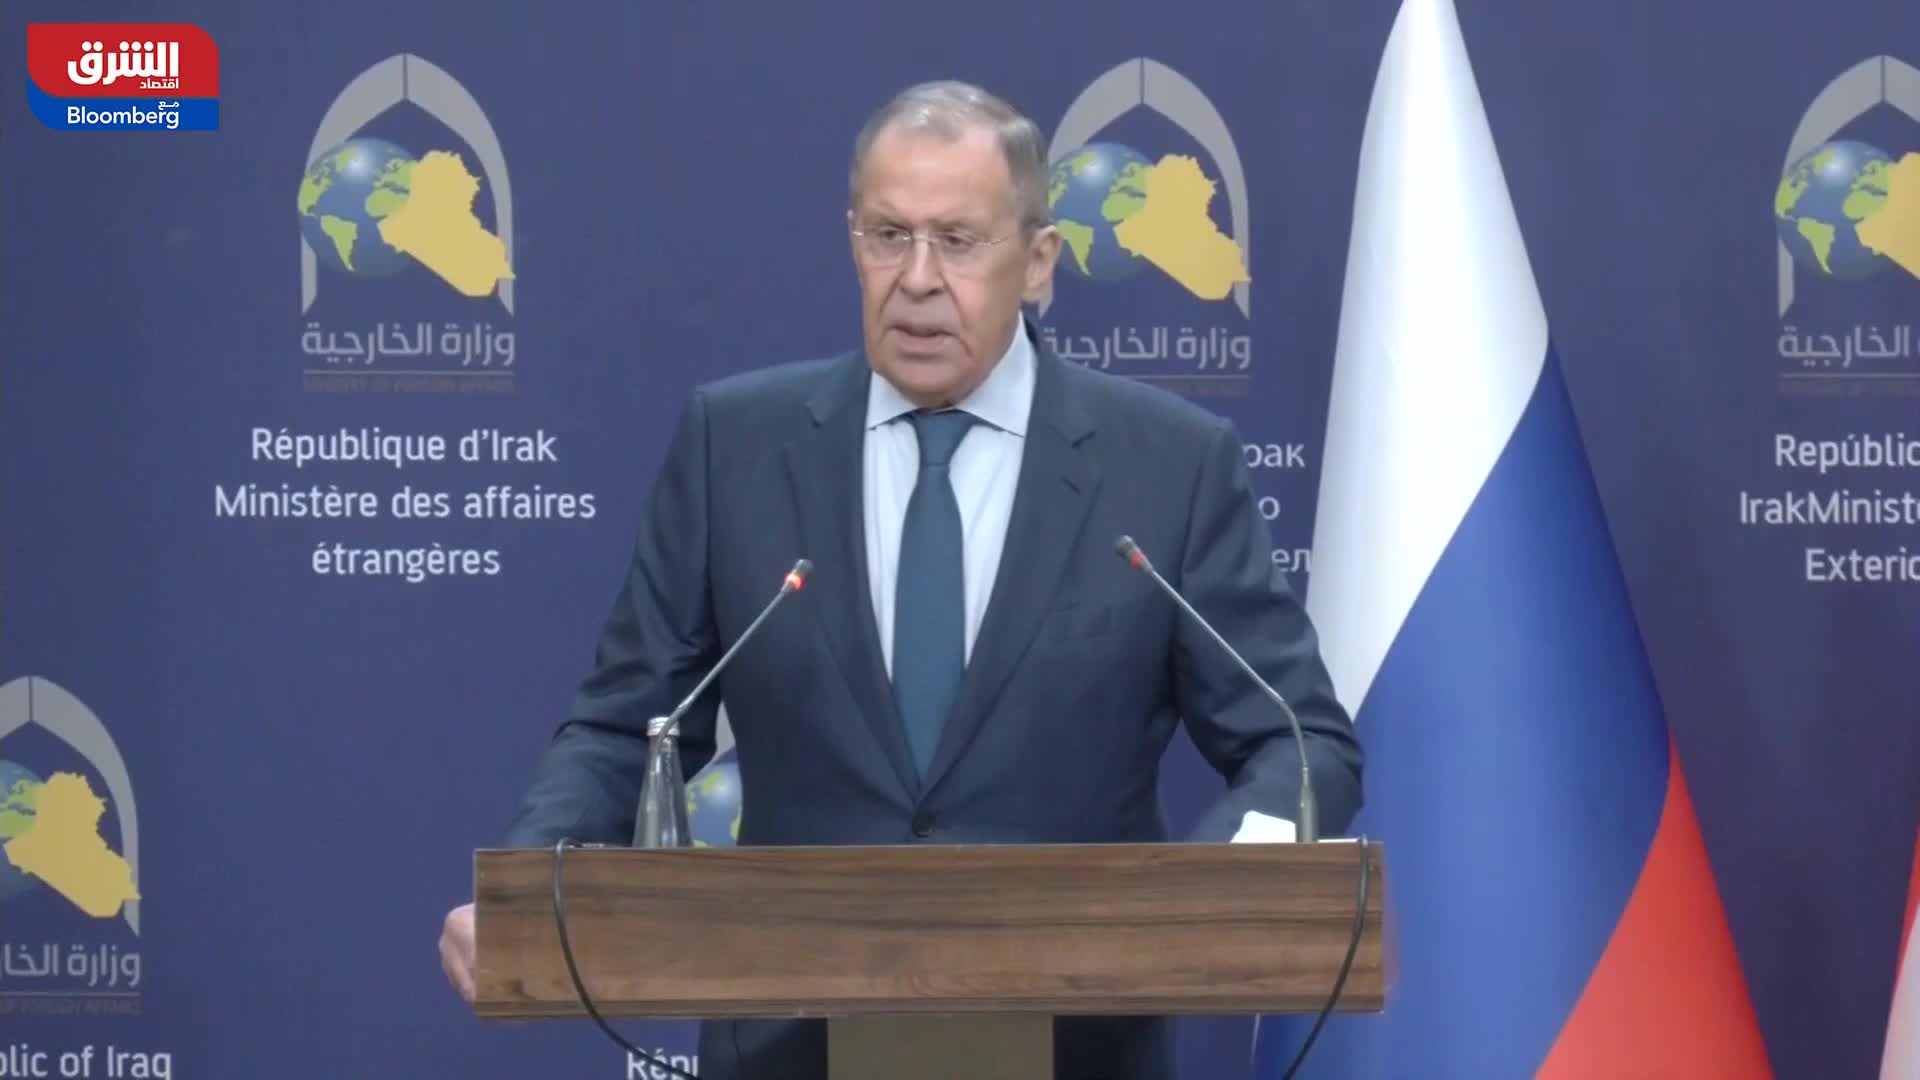  وزير الخارجية العراقي:  ندعو لوقف إطلاق النار في أوكرانيا وبدء الحوار  